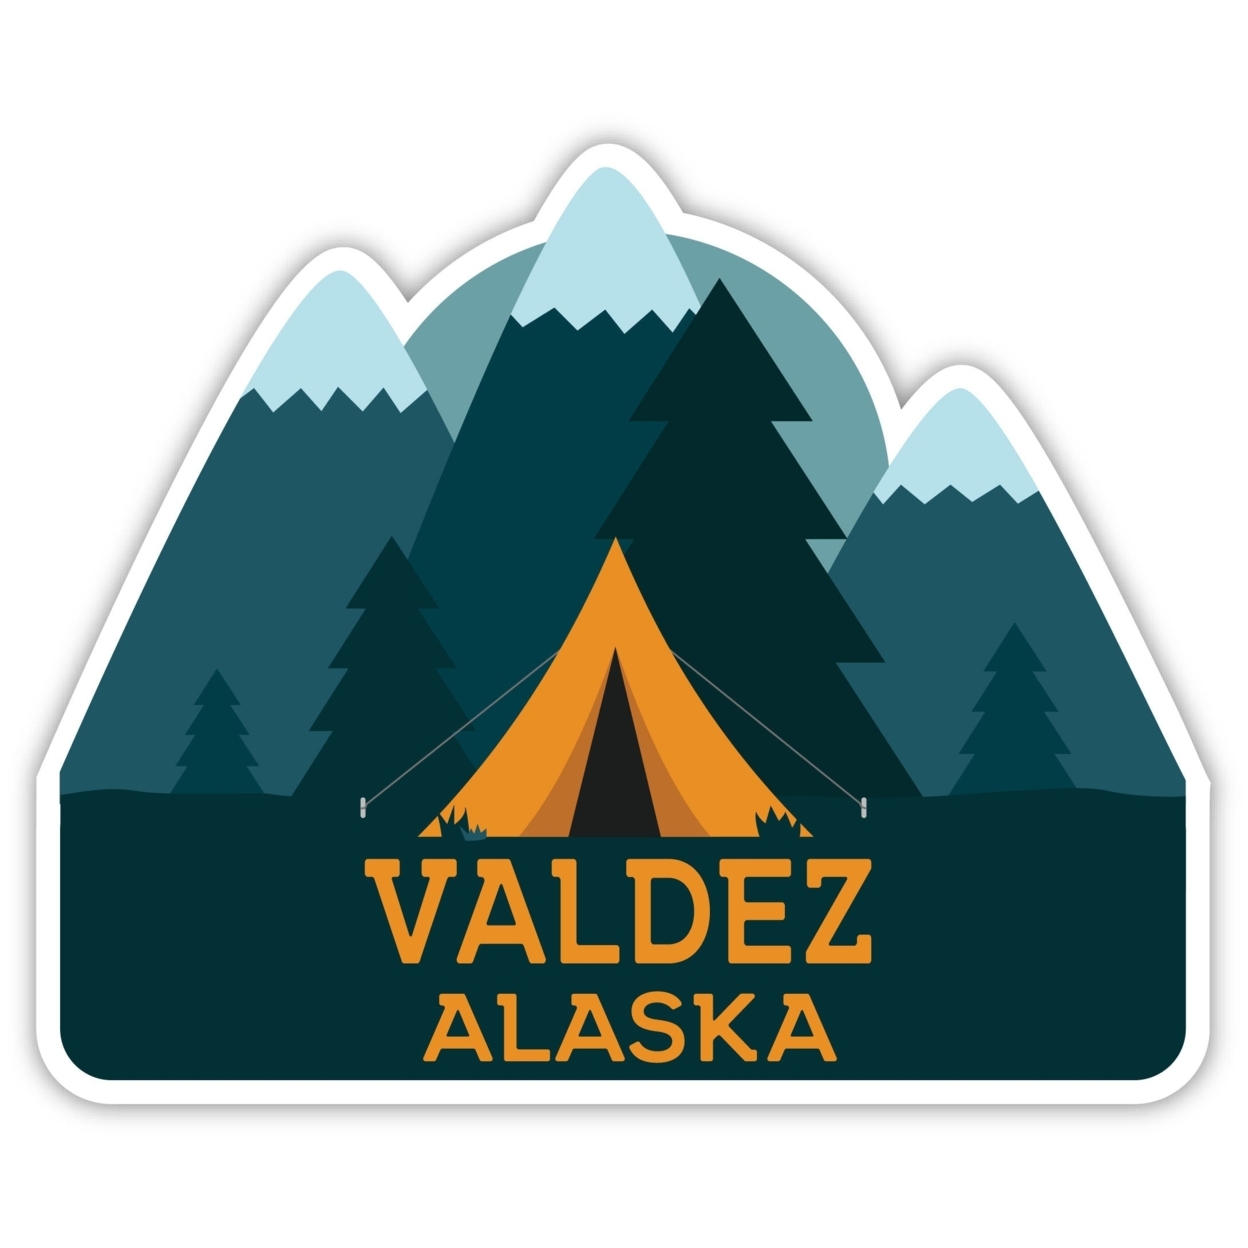 Valdez Alaska Souvenir Decorative Stickers (Choose Theme And Size) - Single Unit, 4-Inch, Tent